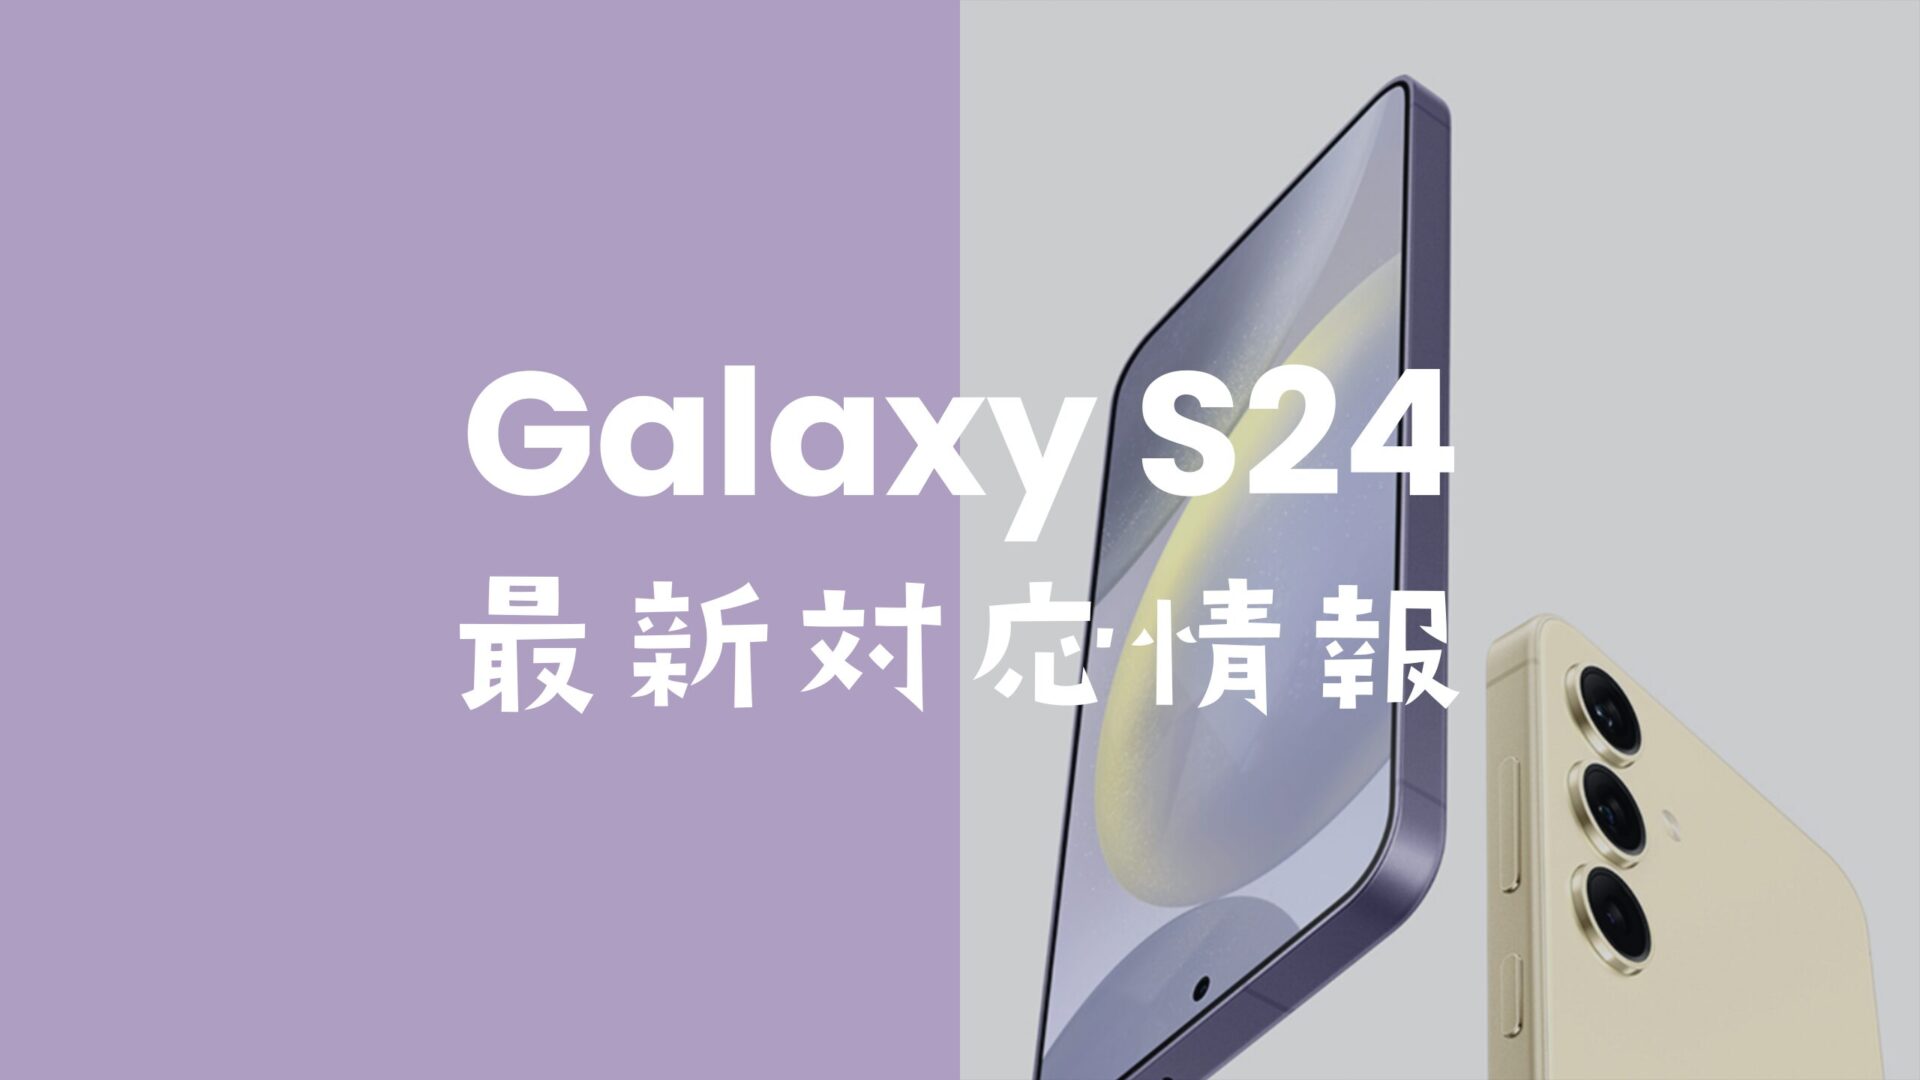 Galaxy S24はSIMフリーで発売。キャリア版(ドコモやau等)もSIMロック無し。のサムネイル画像